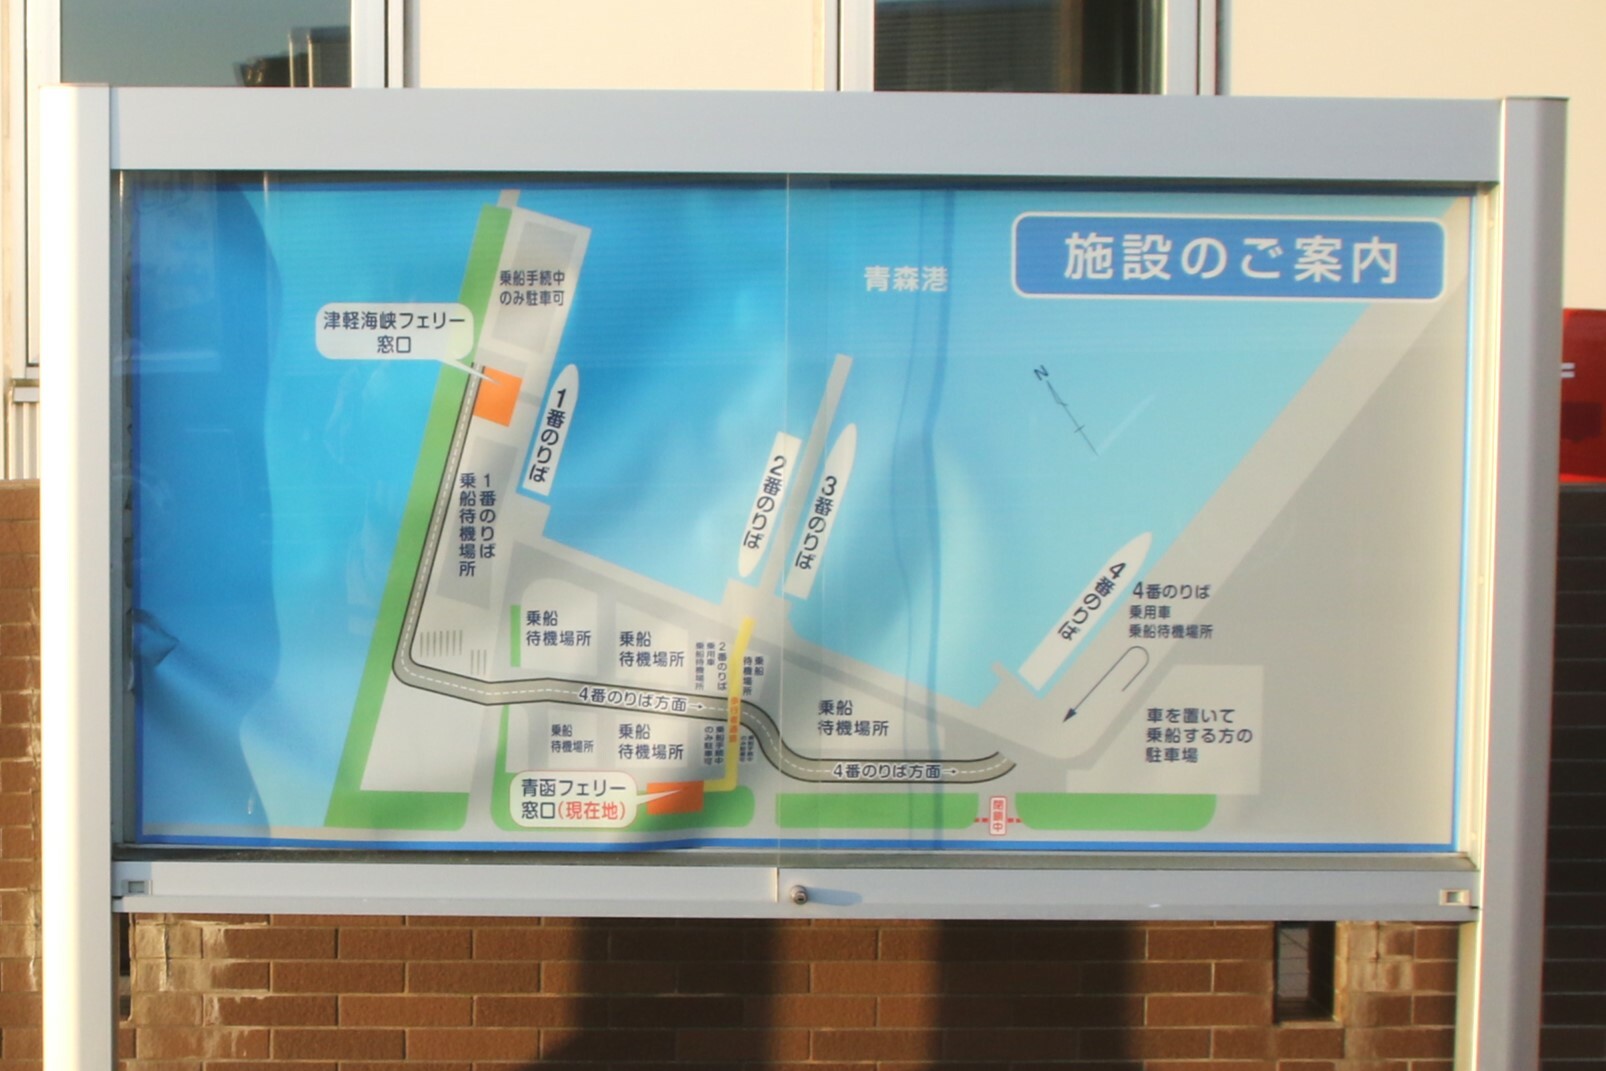 青函フェリーターミナル前にある案内図